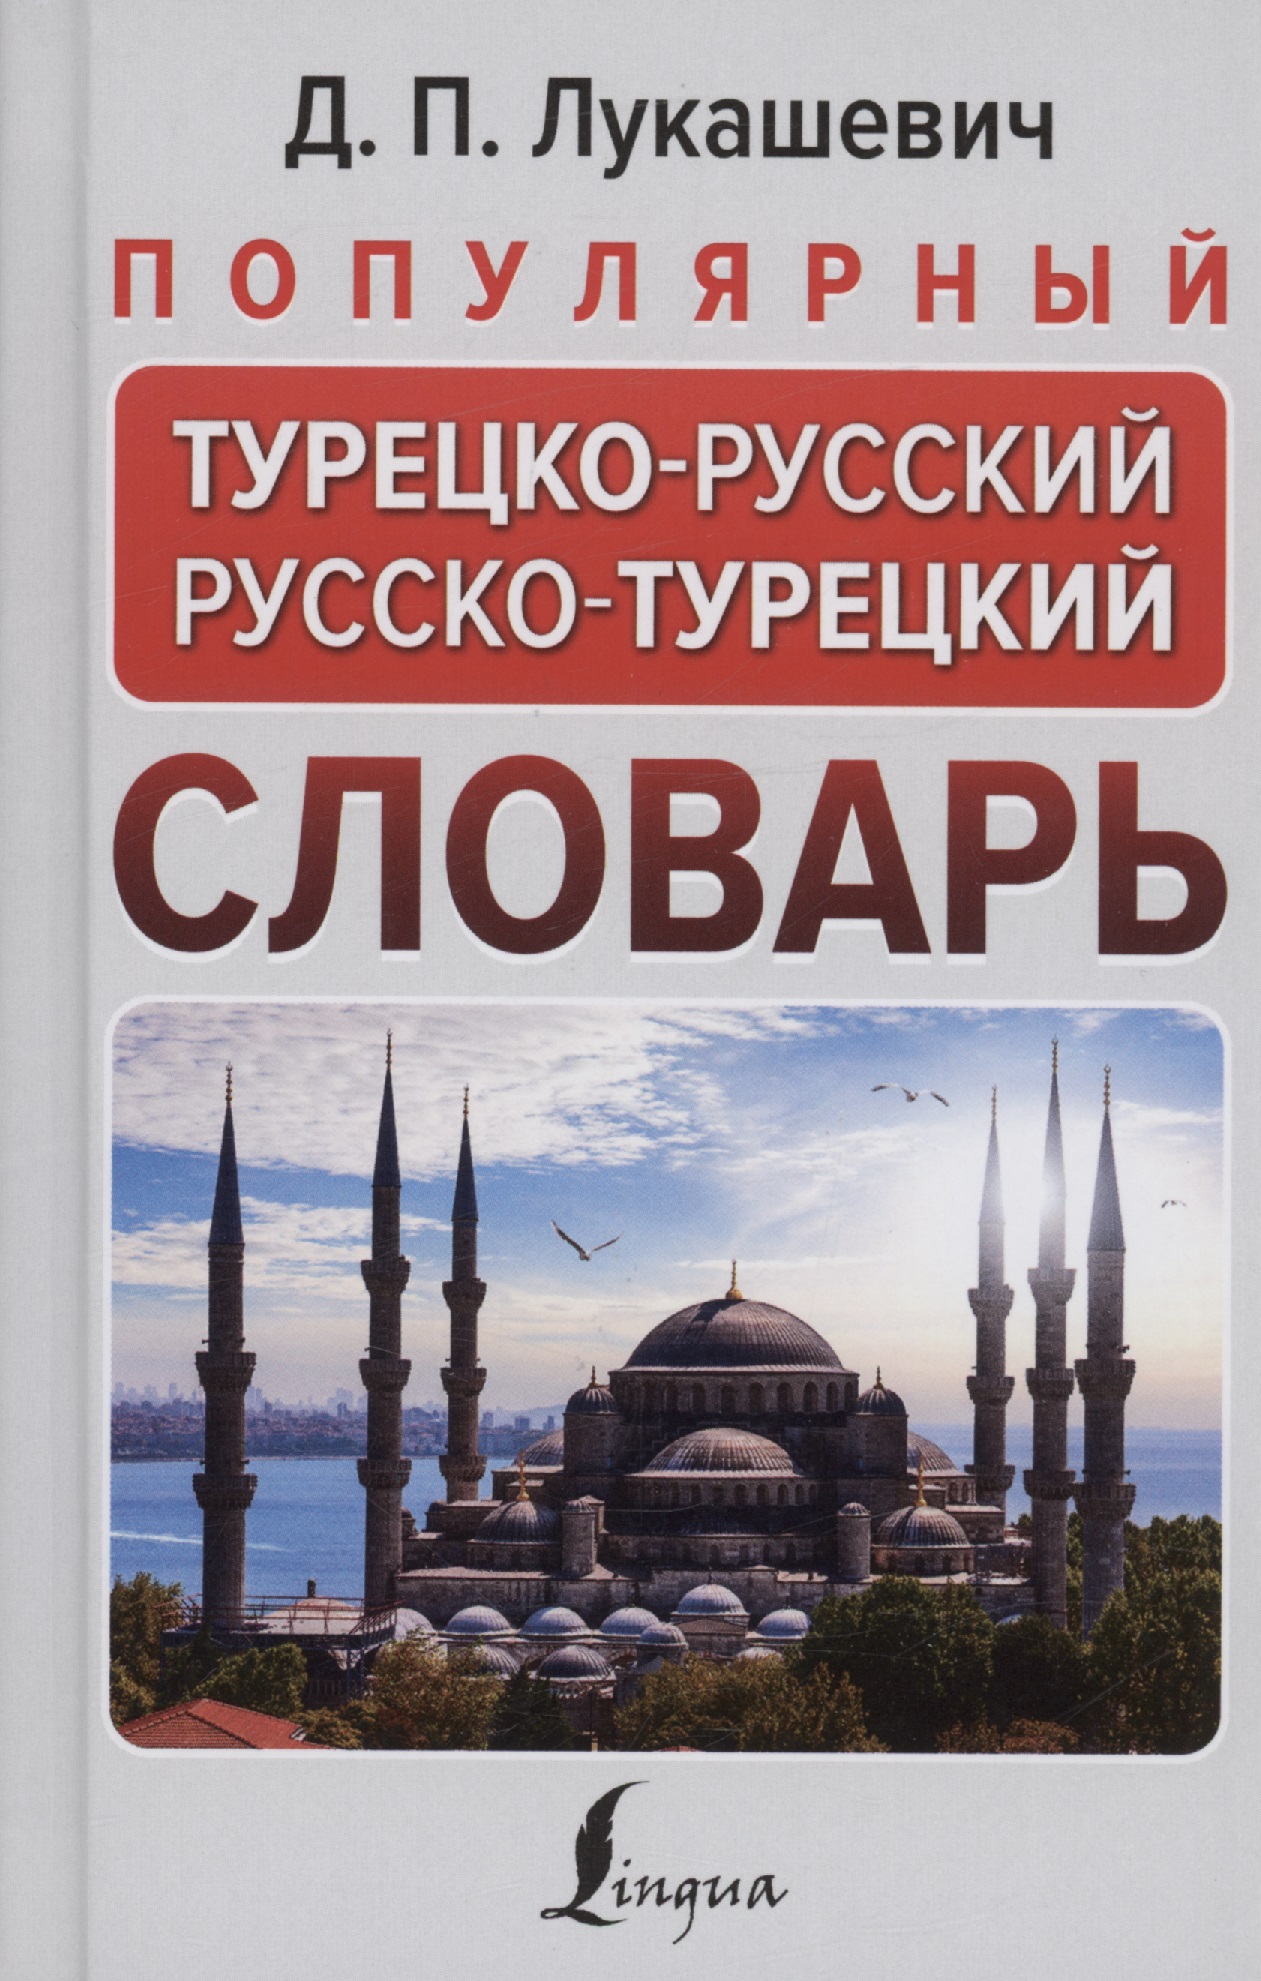 Лукашевич Д. П. - Популярный турецко-русский русско-турецкий словарь